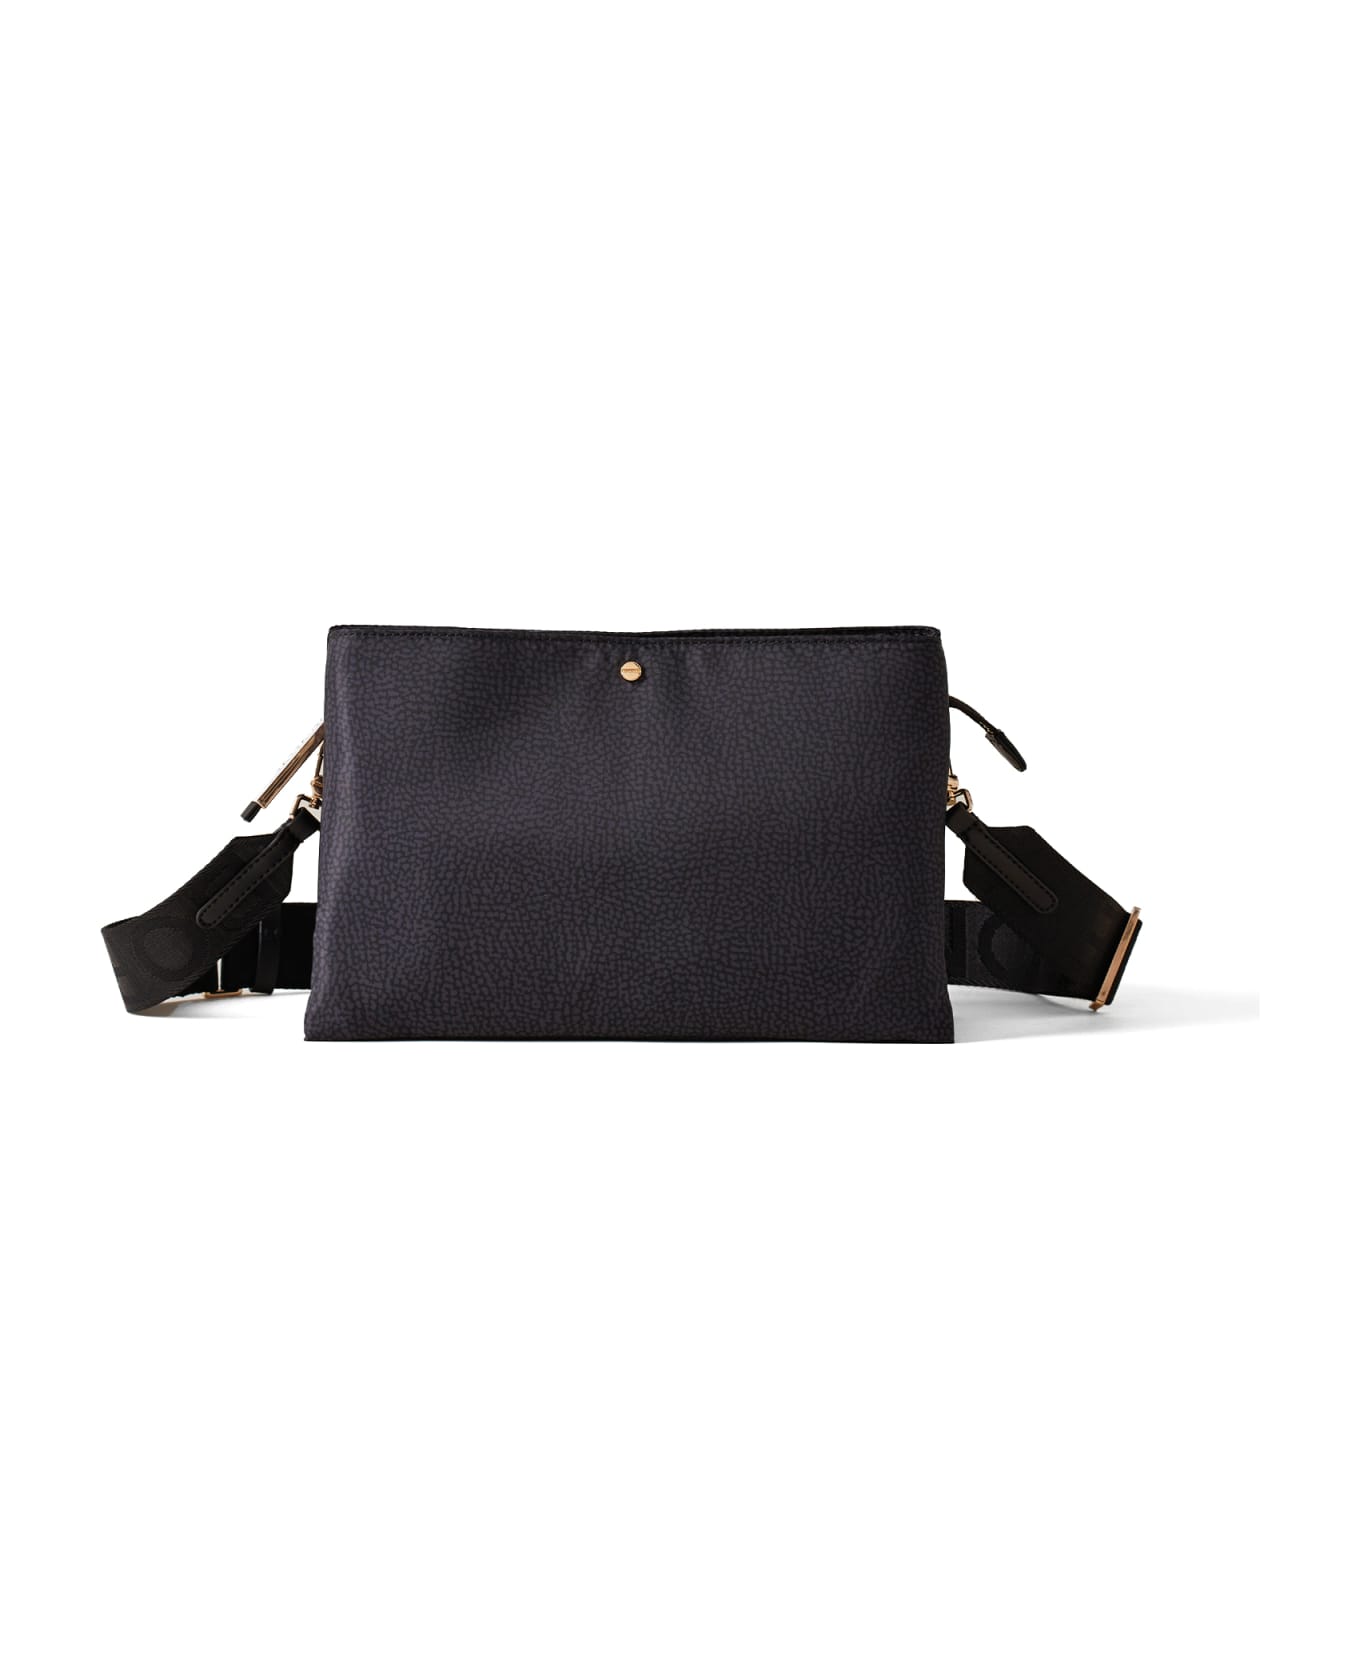 Borbonese Small Black Shoulder Bag - DARK BLACK ショルダーバッグ